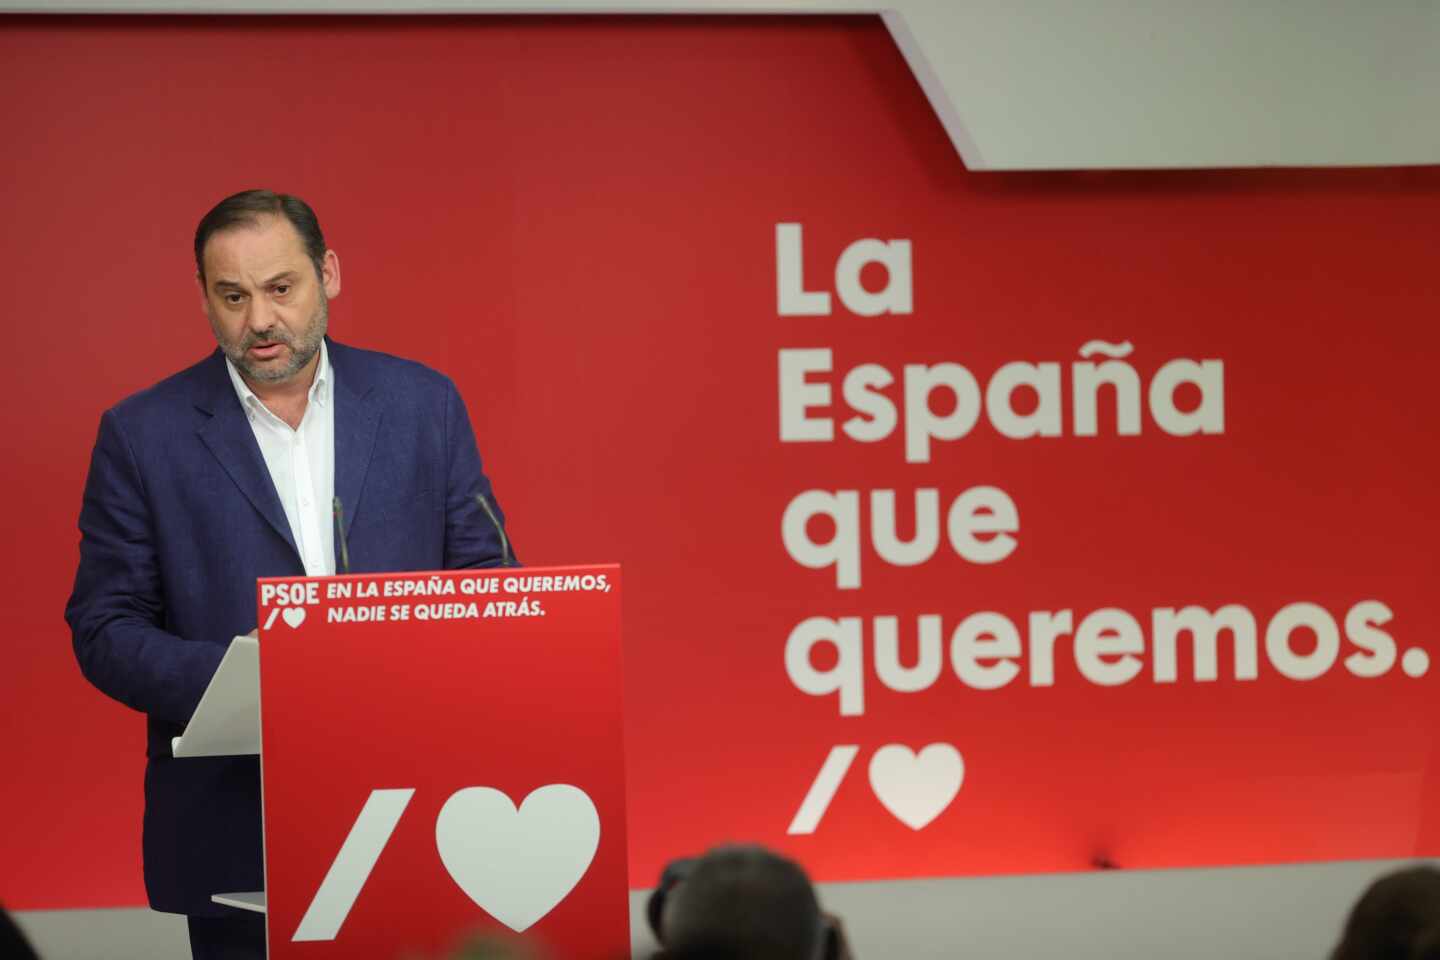 El PSOE marca distancias con Podemos por no condenar los disturbios mientras Echenique matiza